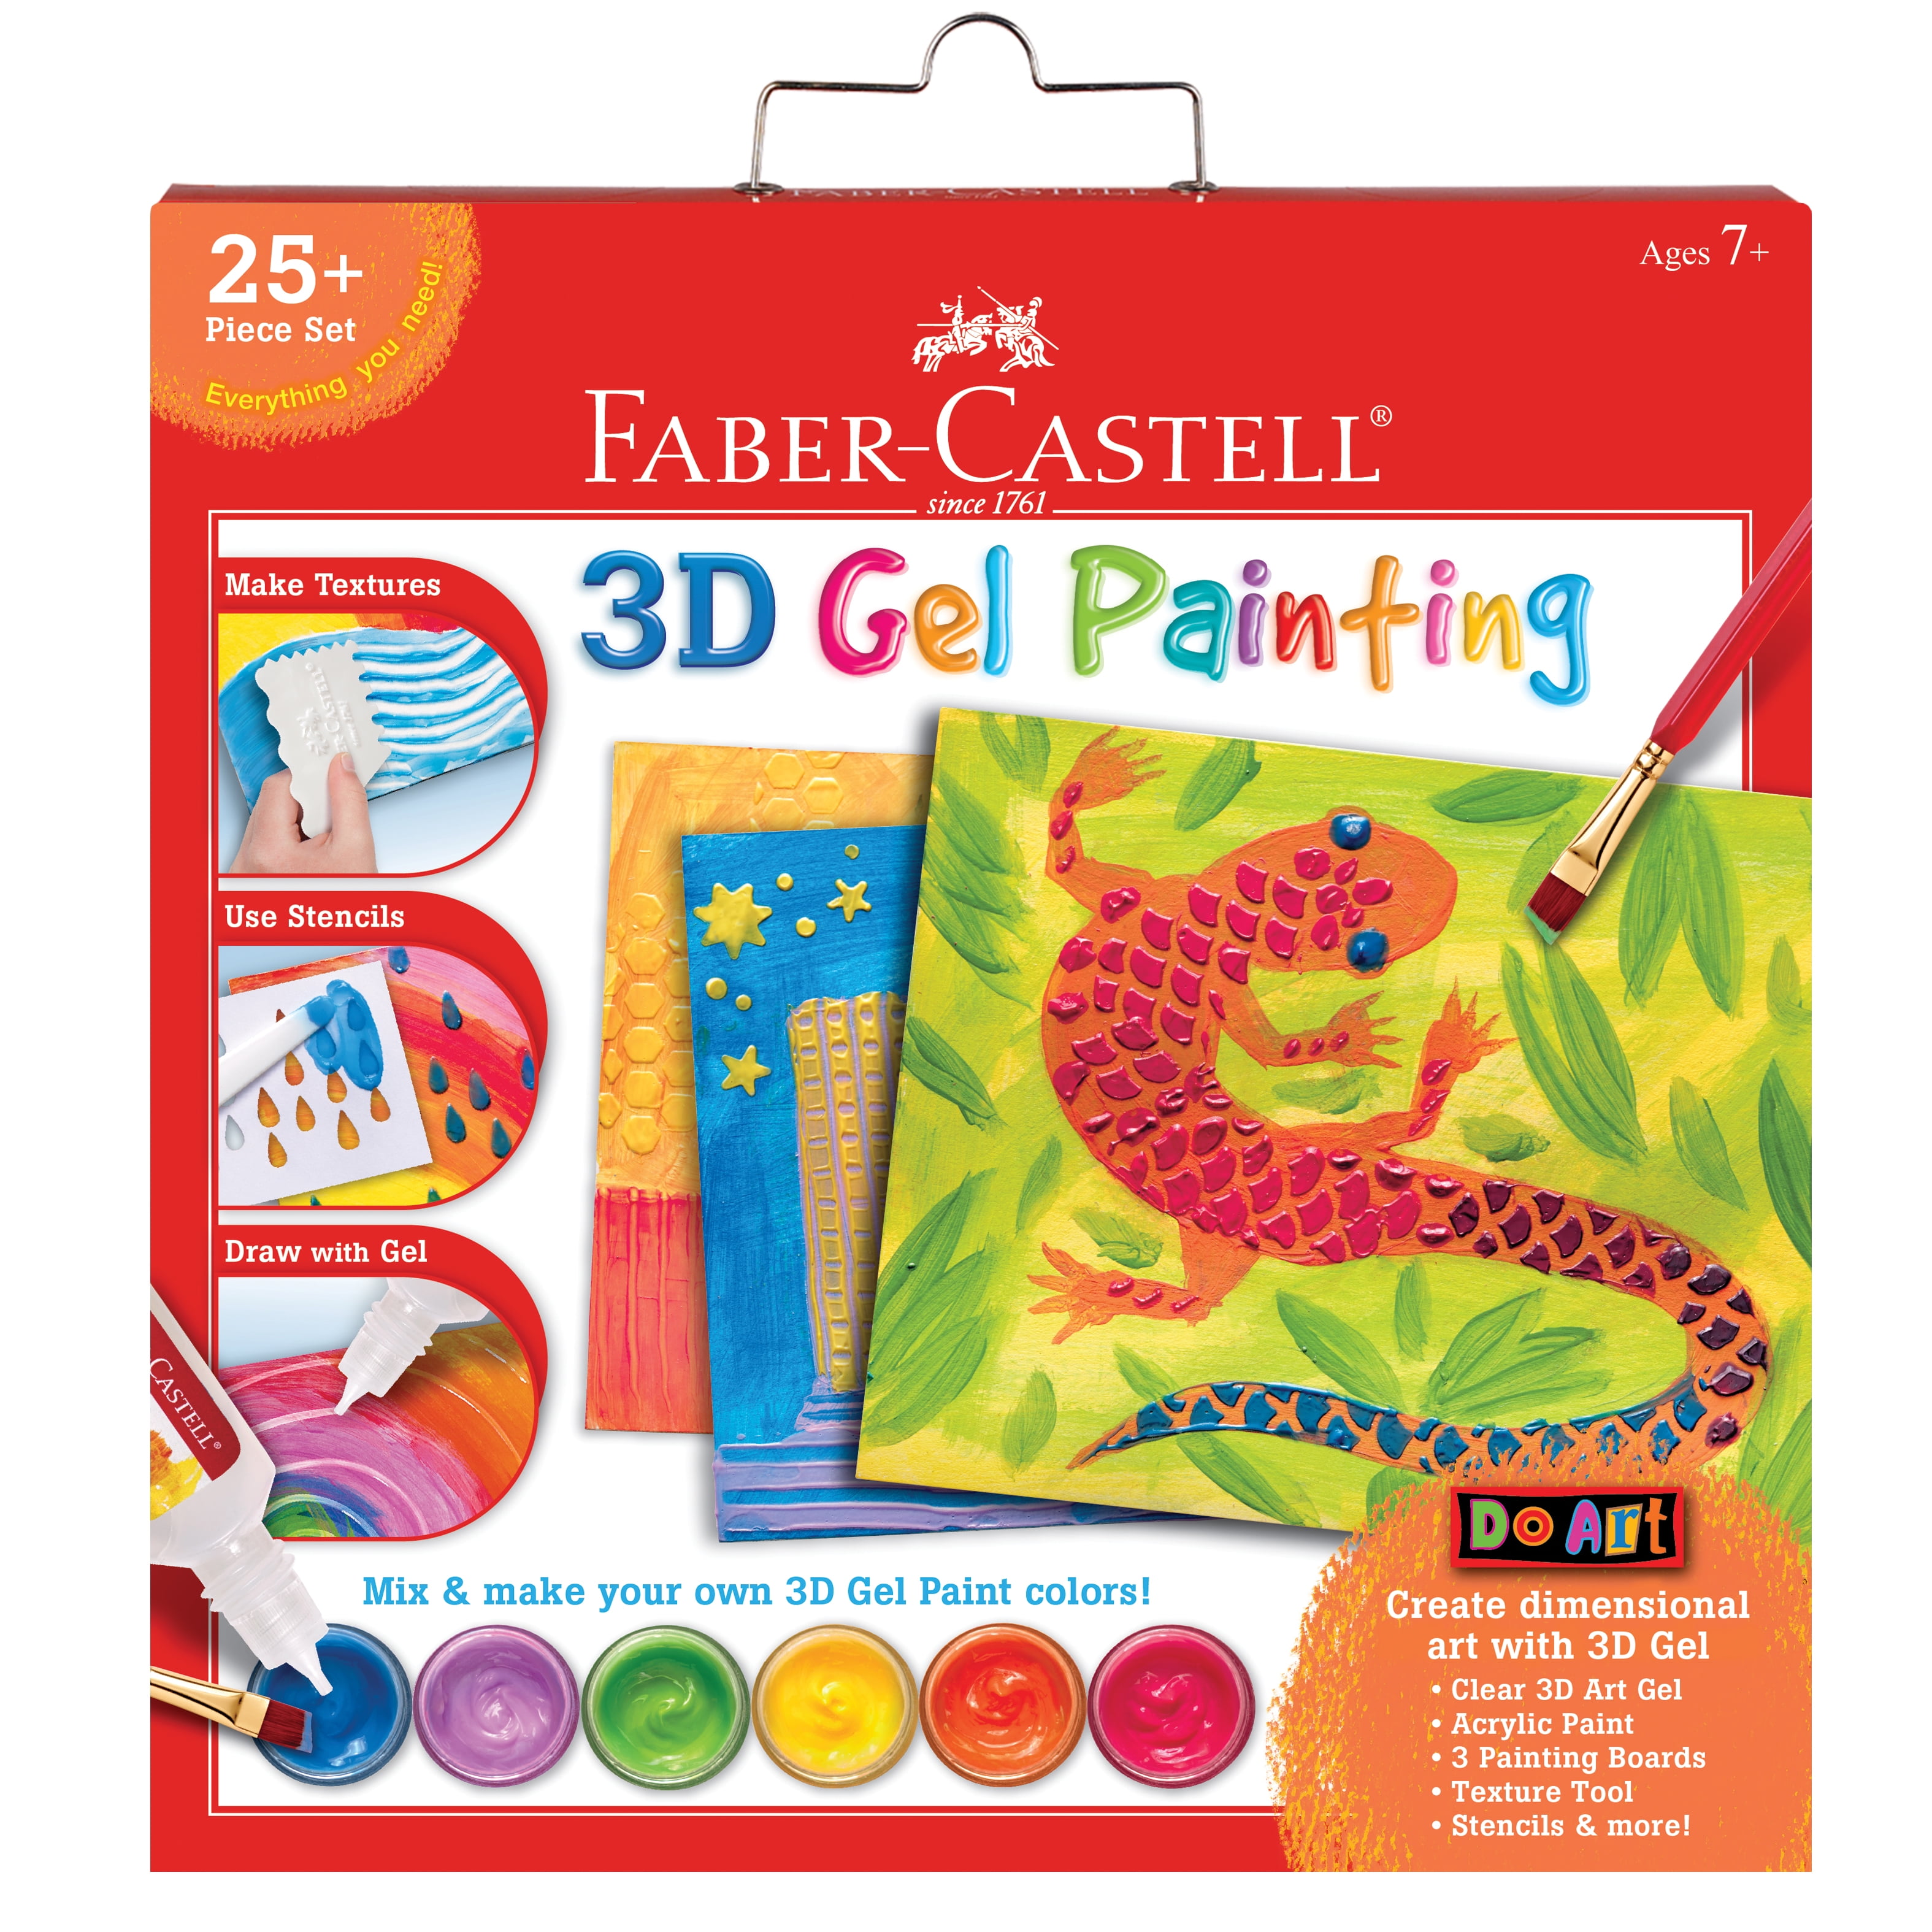 Faber-Castell Do Art 3D Sand Painting Kit